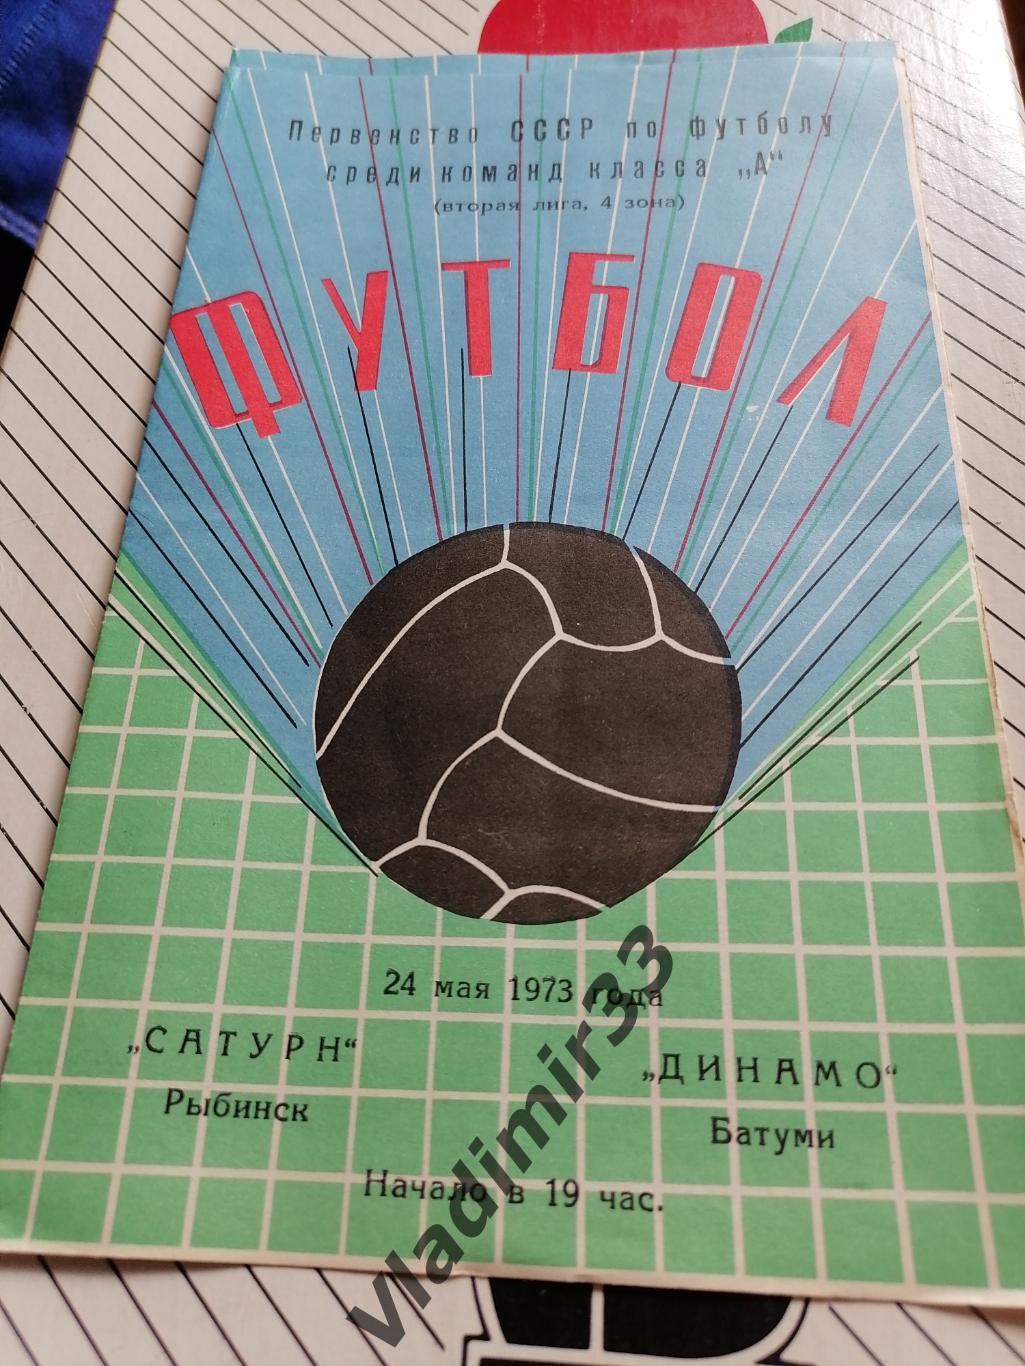 Сатурн Рыбинск - Динамо Батуми 1973